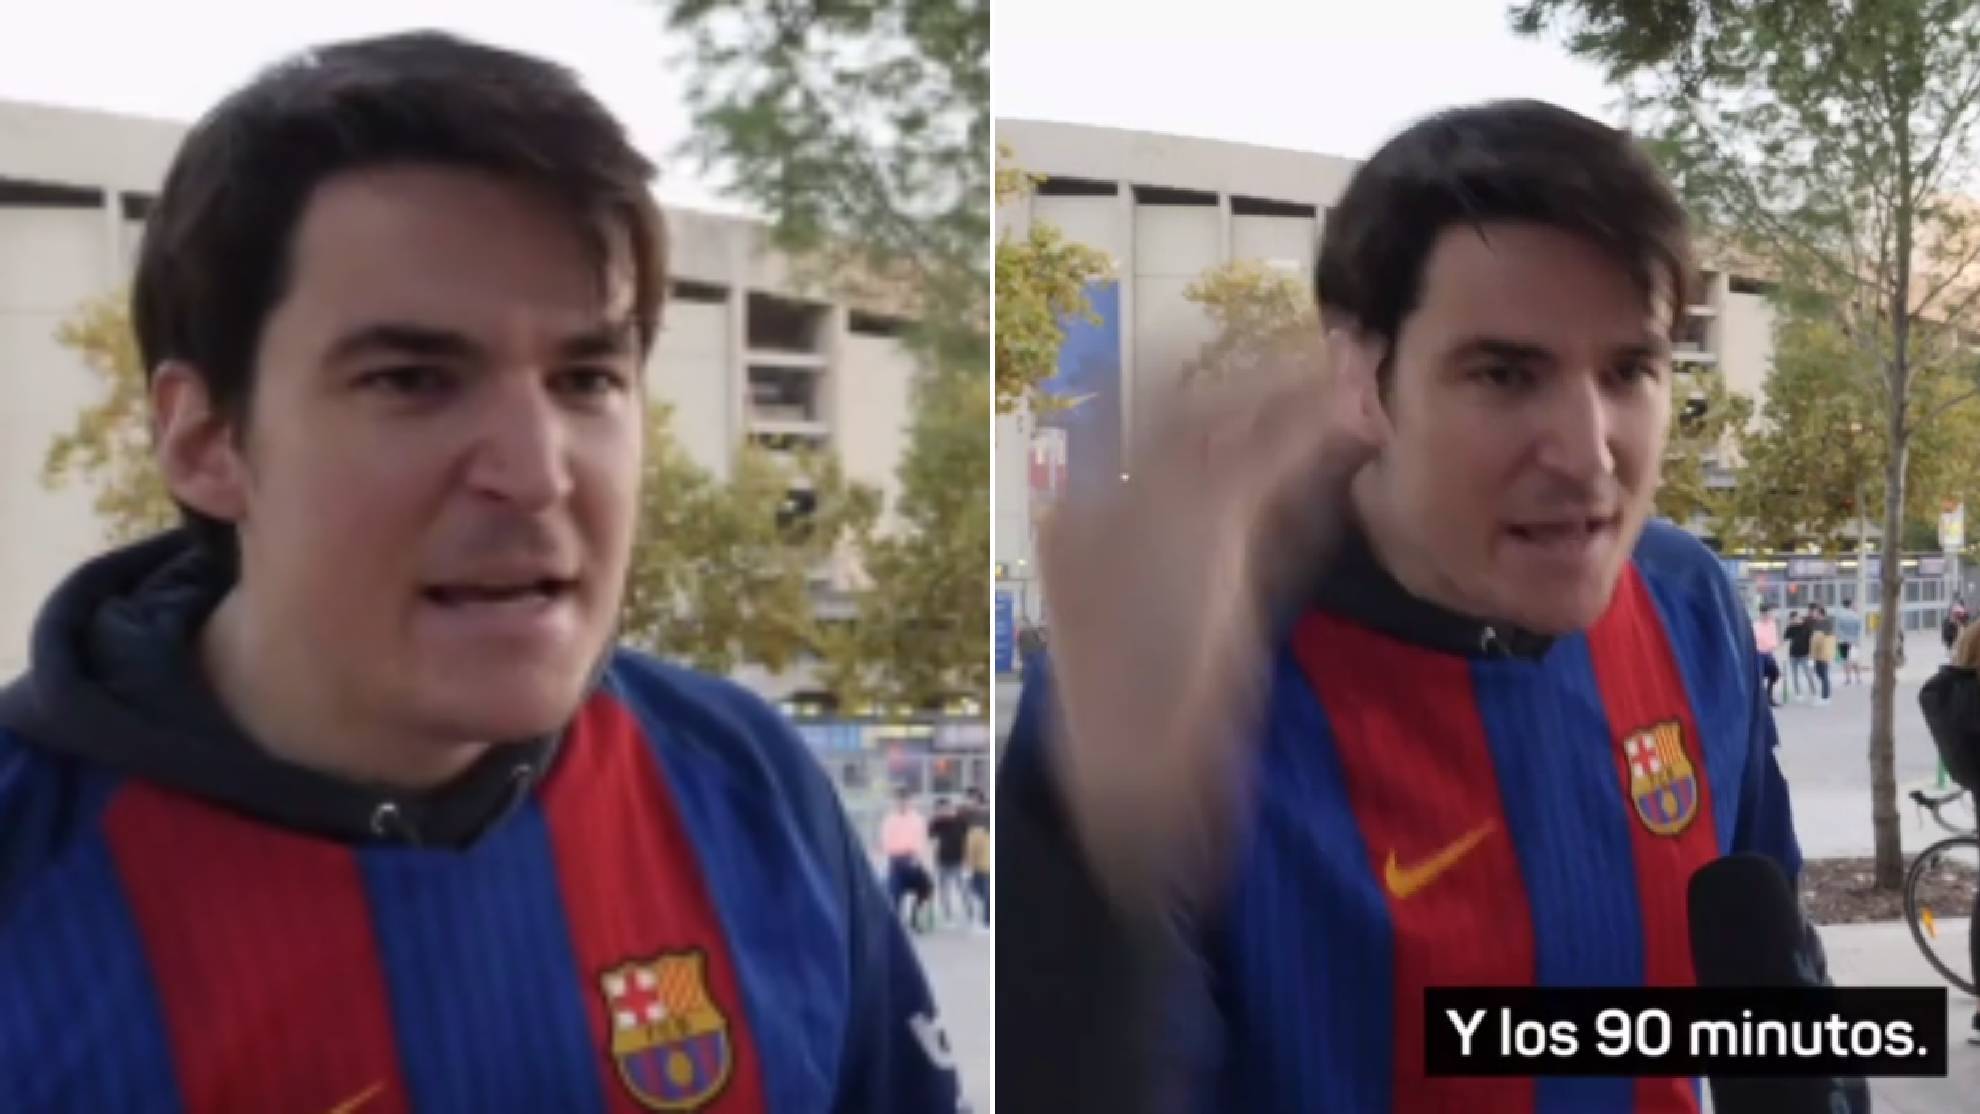 El discurso de este aficionado que pone la cara colorada al Barça: "Lo que hace falta..."